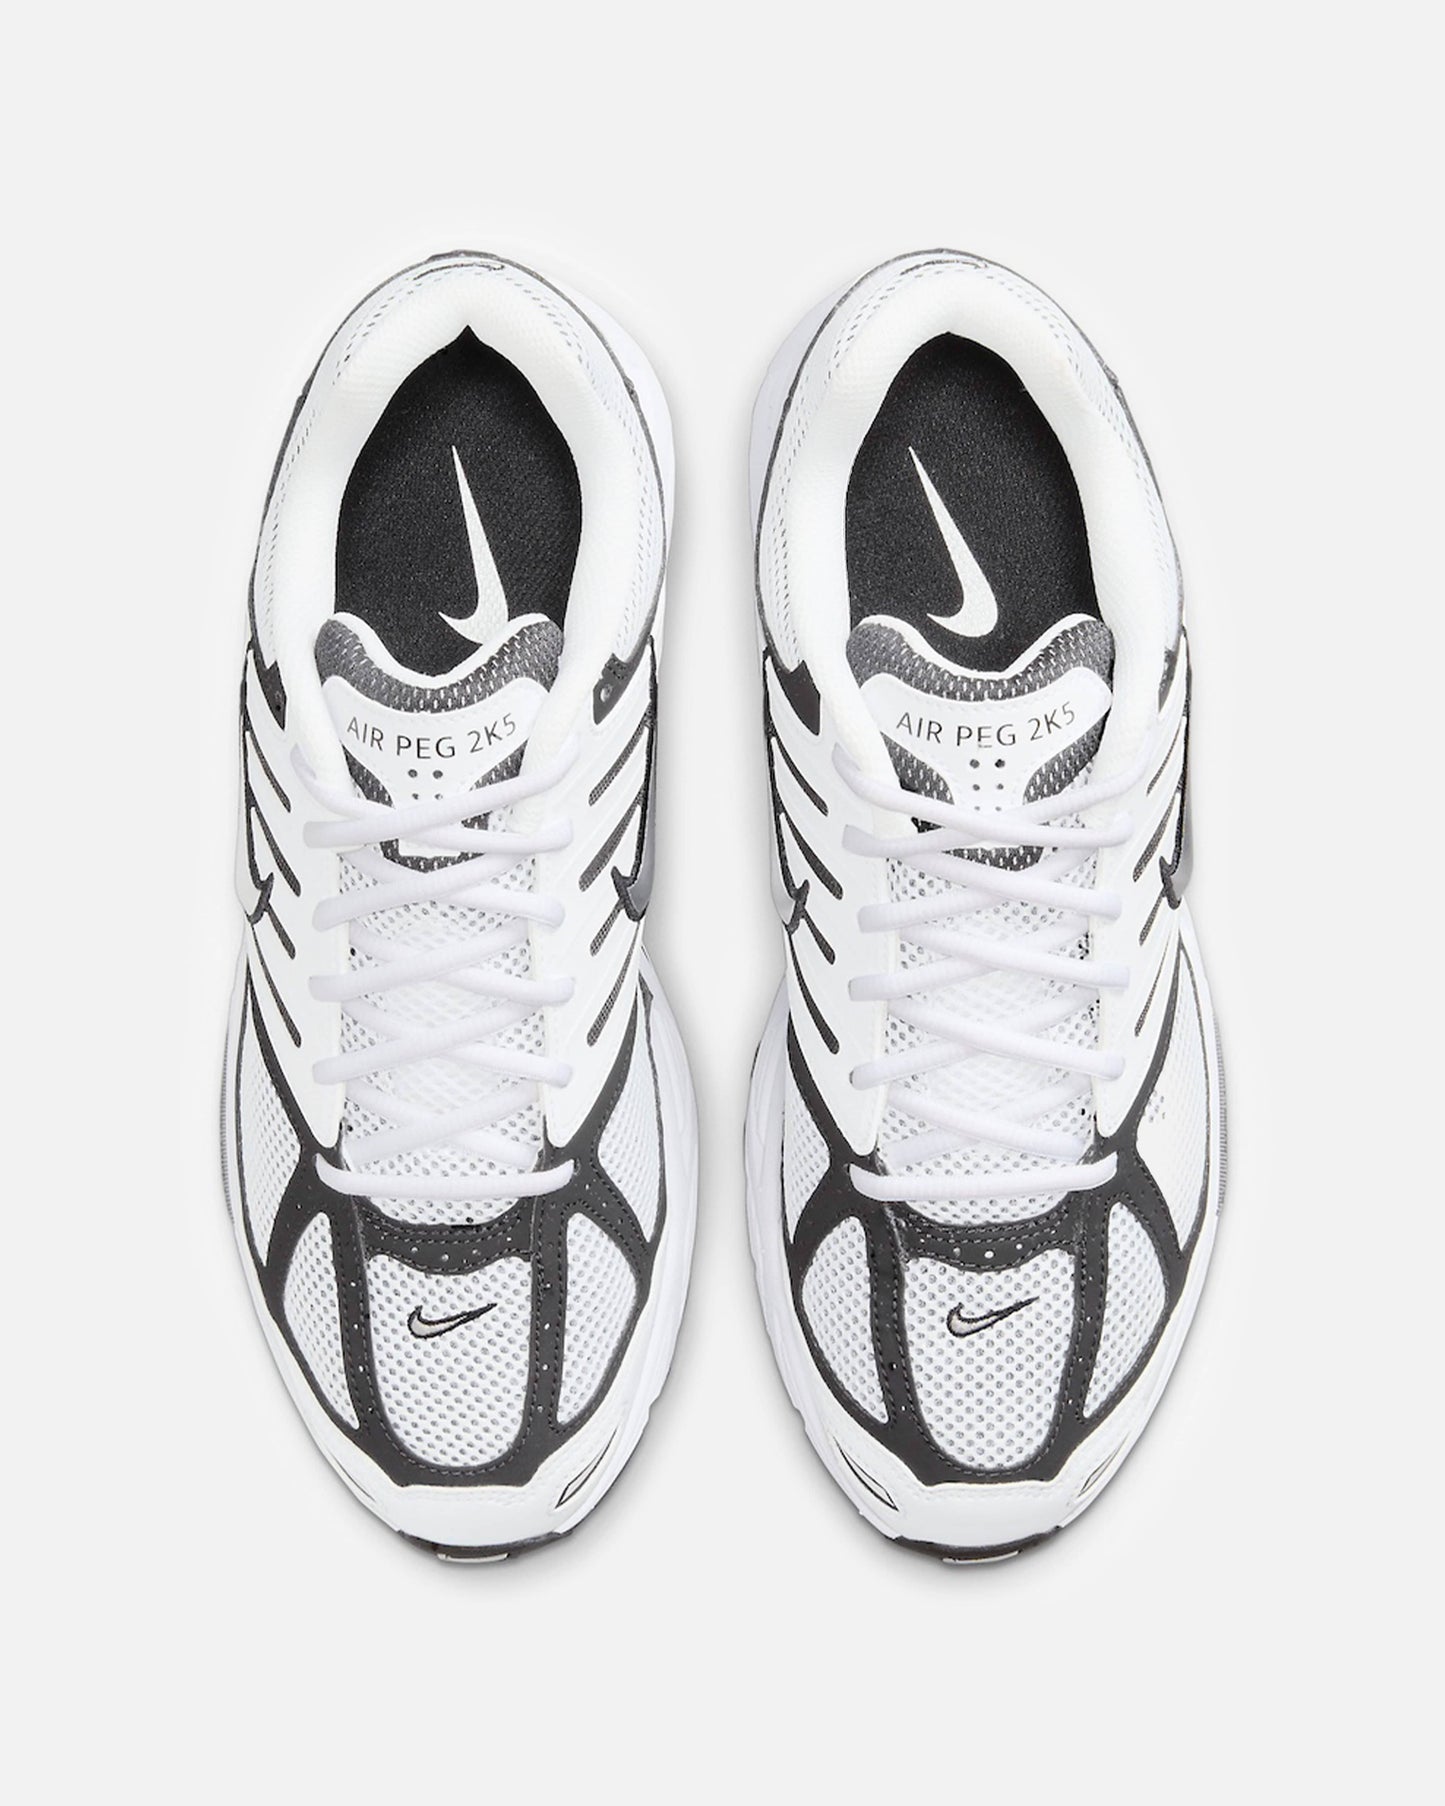 Nike Men's Sneakers Air Pegasus 2K5 'Metallic Silver'